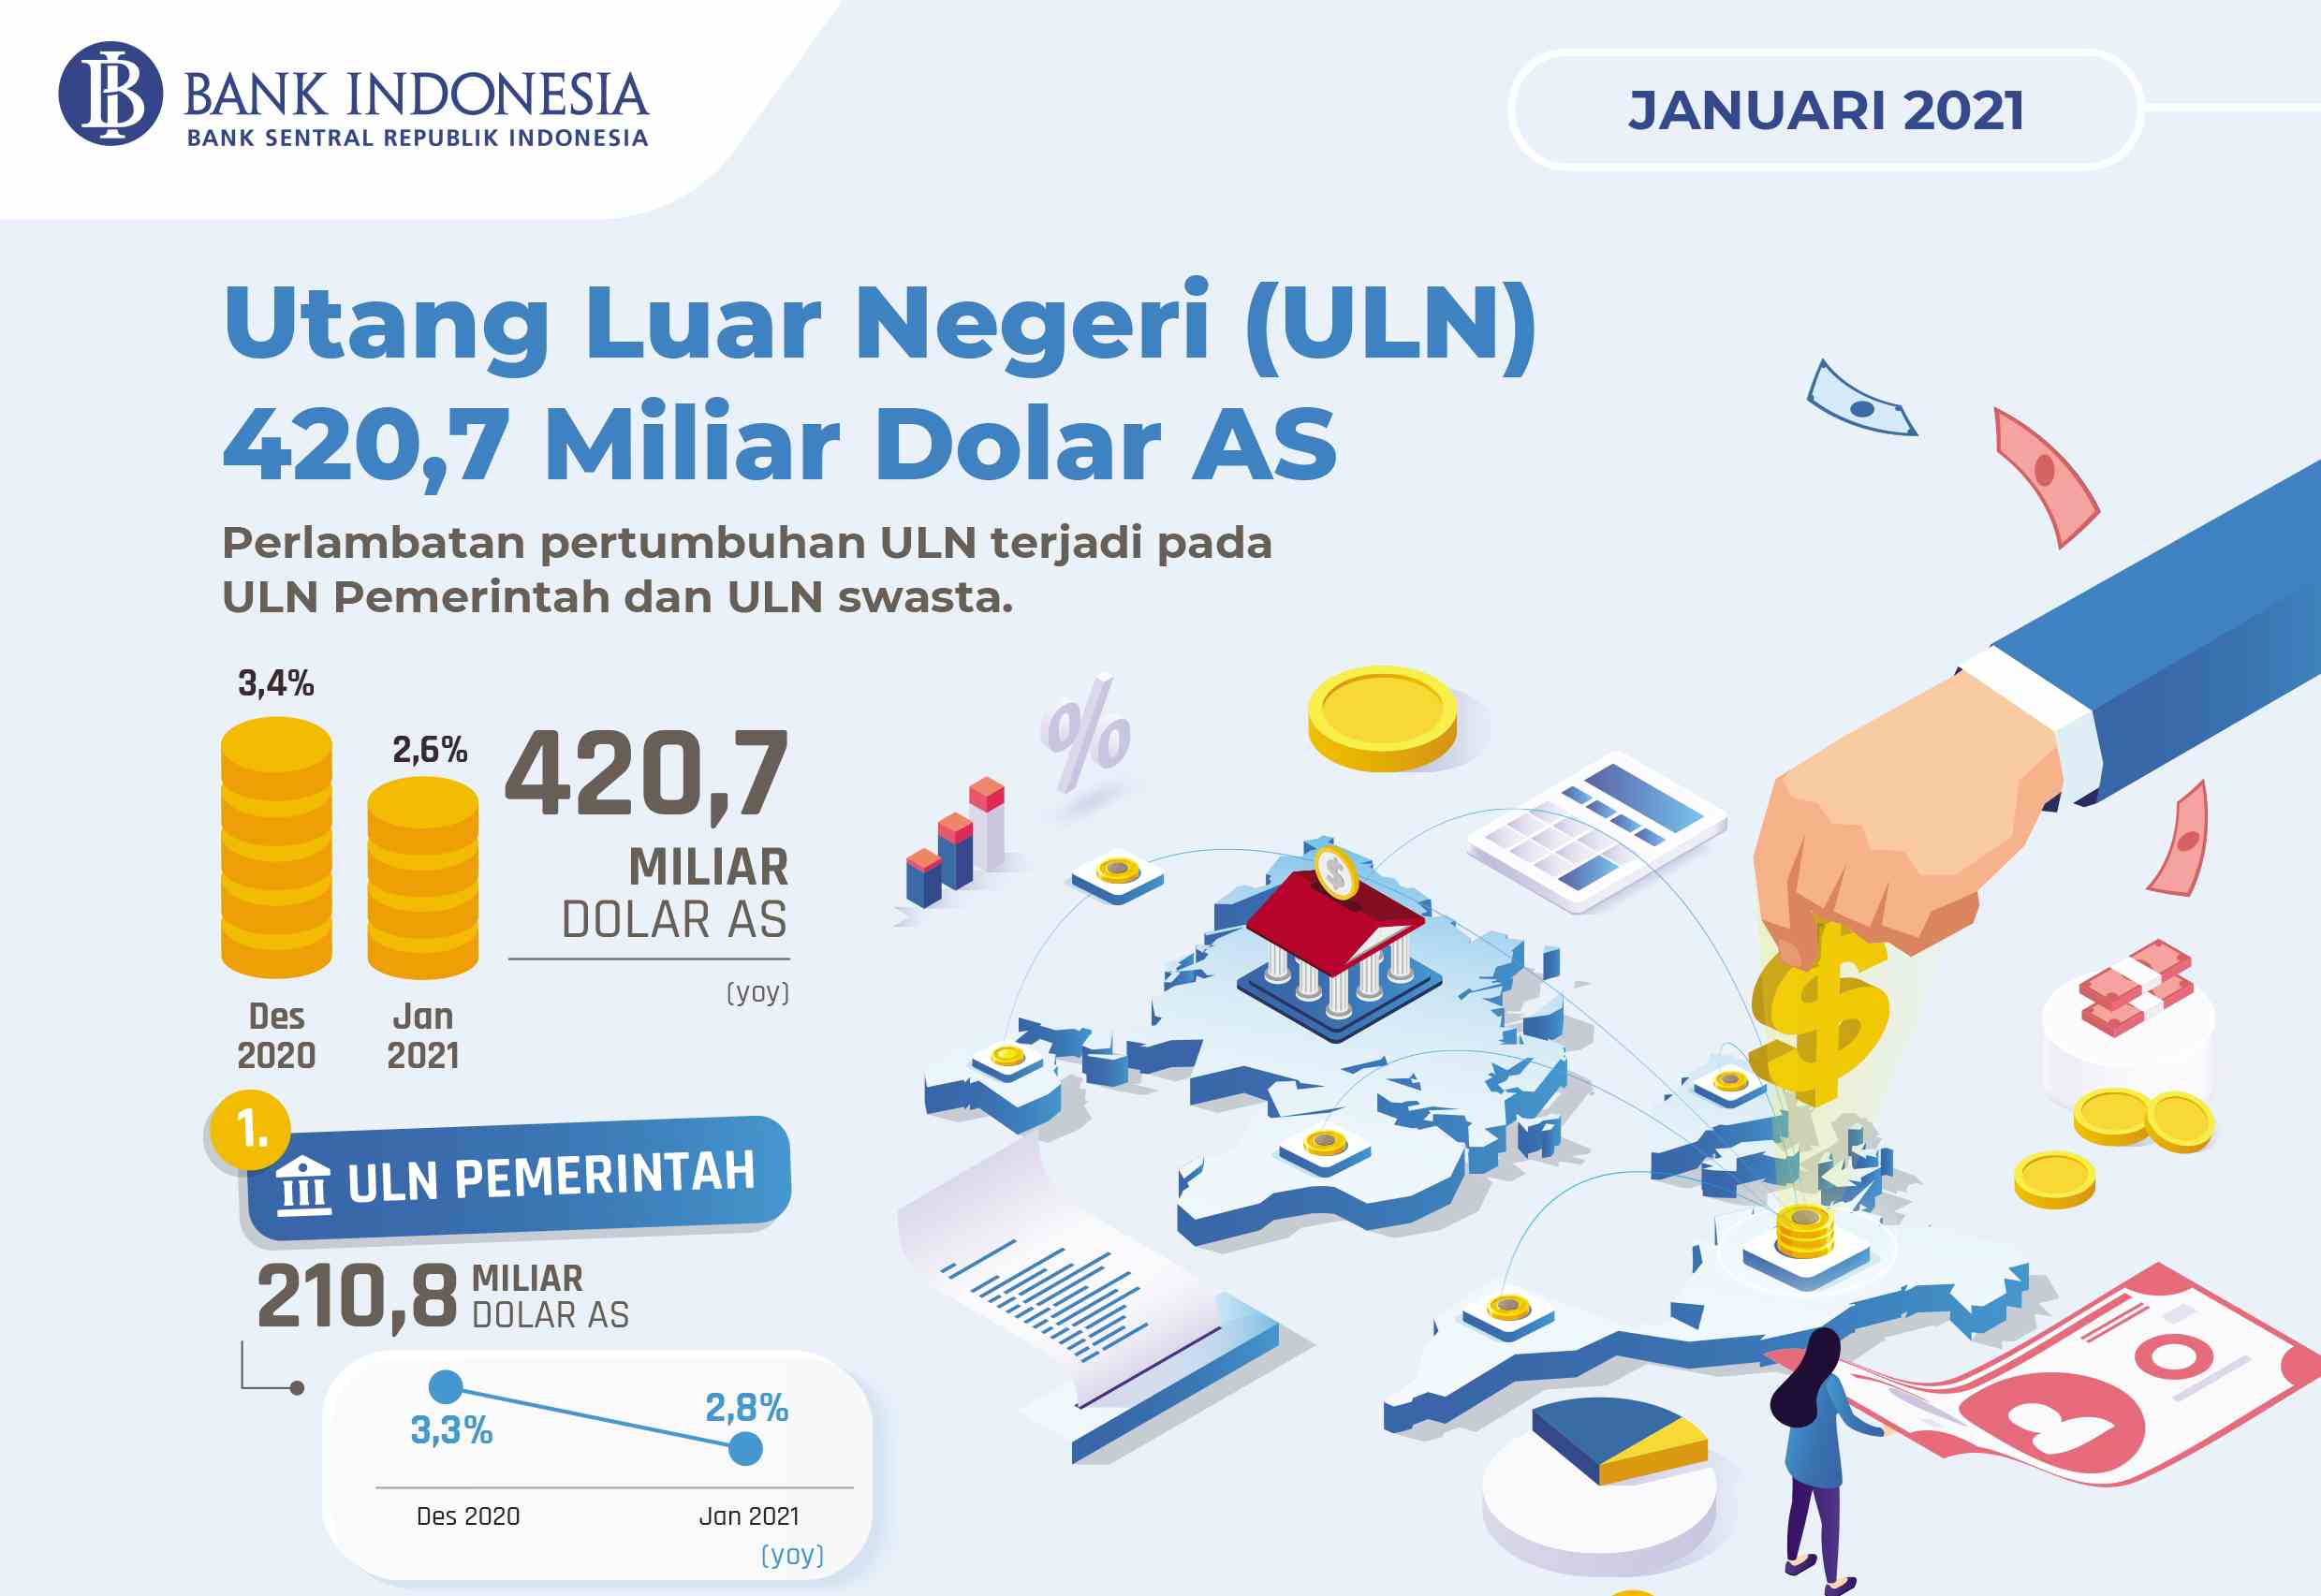 Utang Luar Negeri Indonesia US$ 420,7 Miliar per Januari 2021